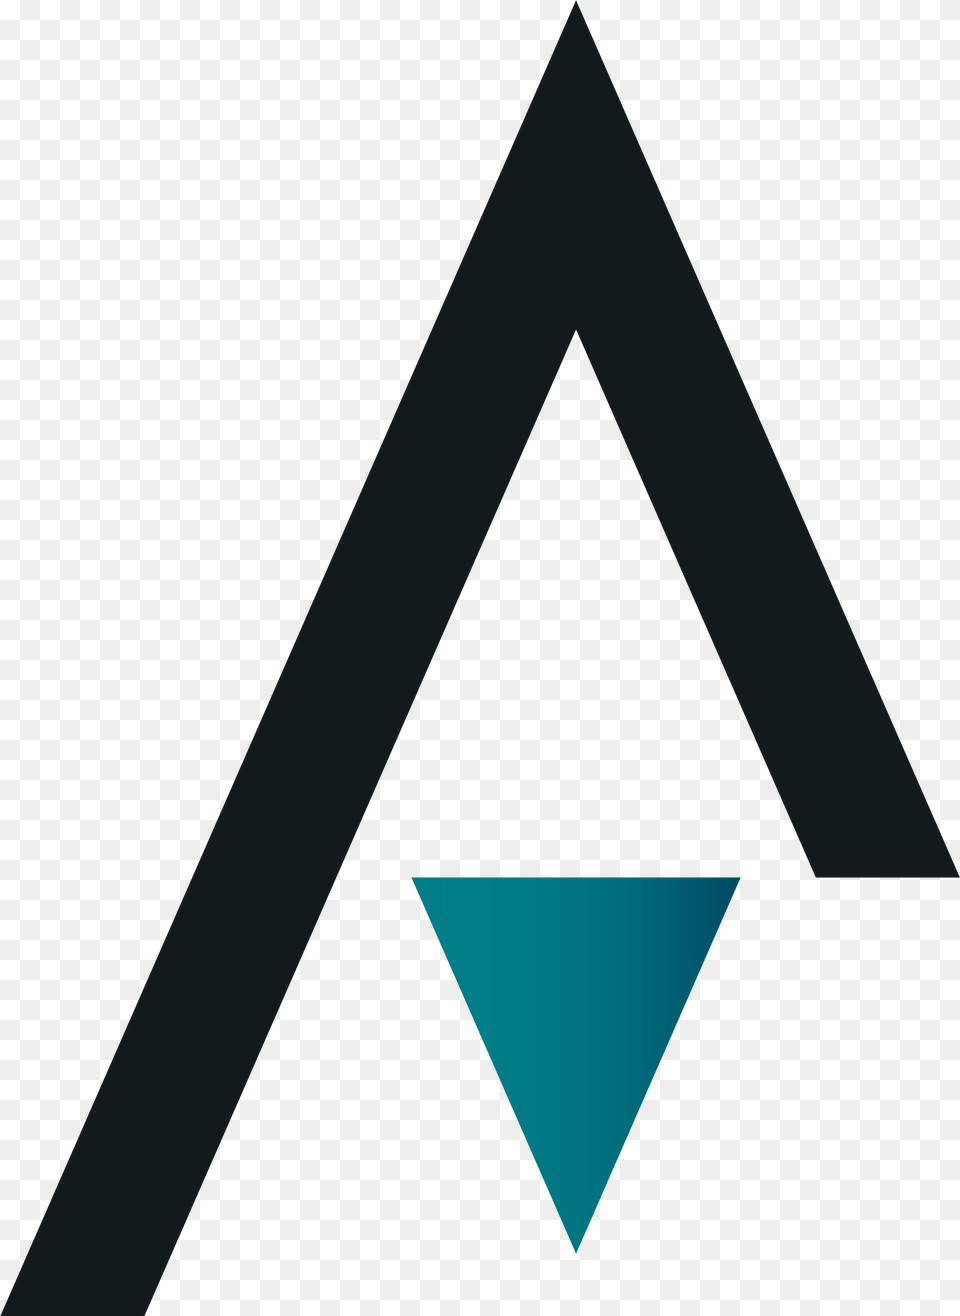 Architecture Design Architecture Logo Design, Triangle Free Png Download